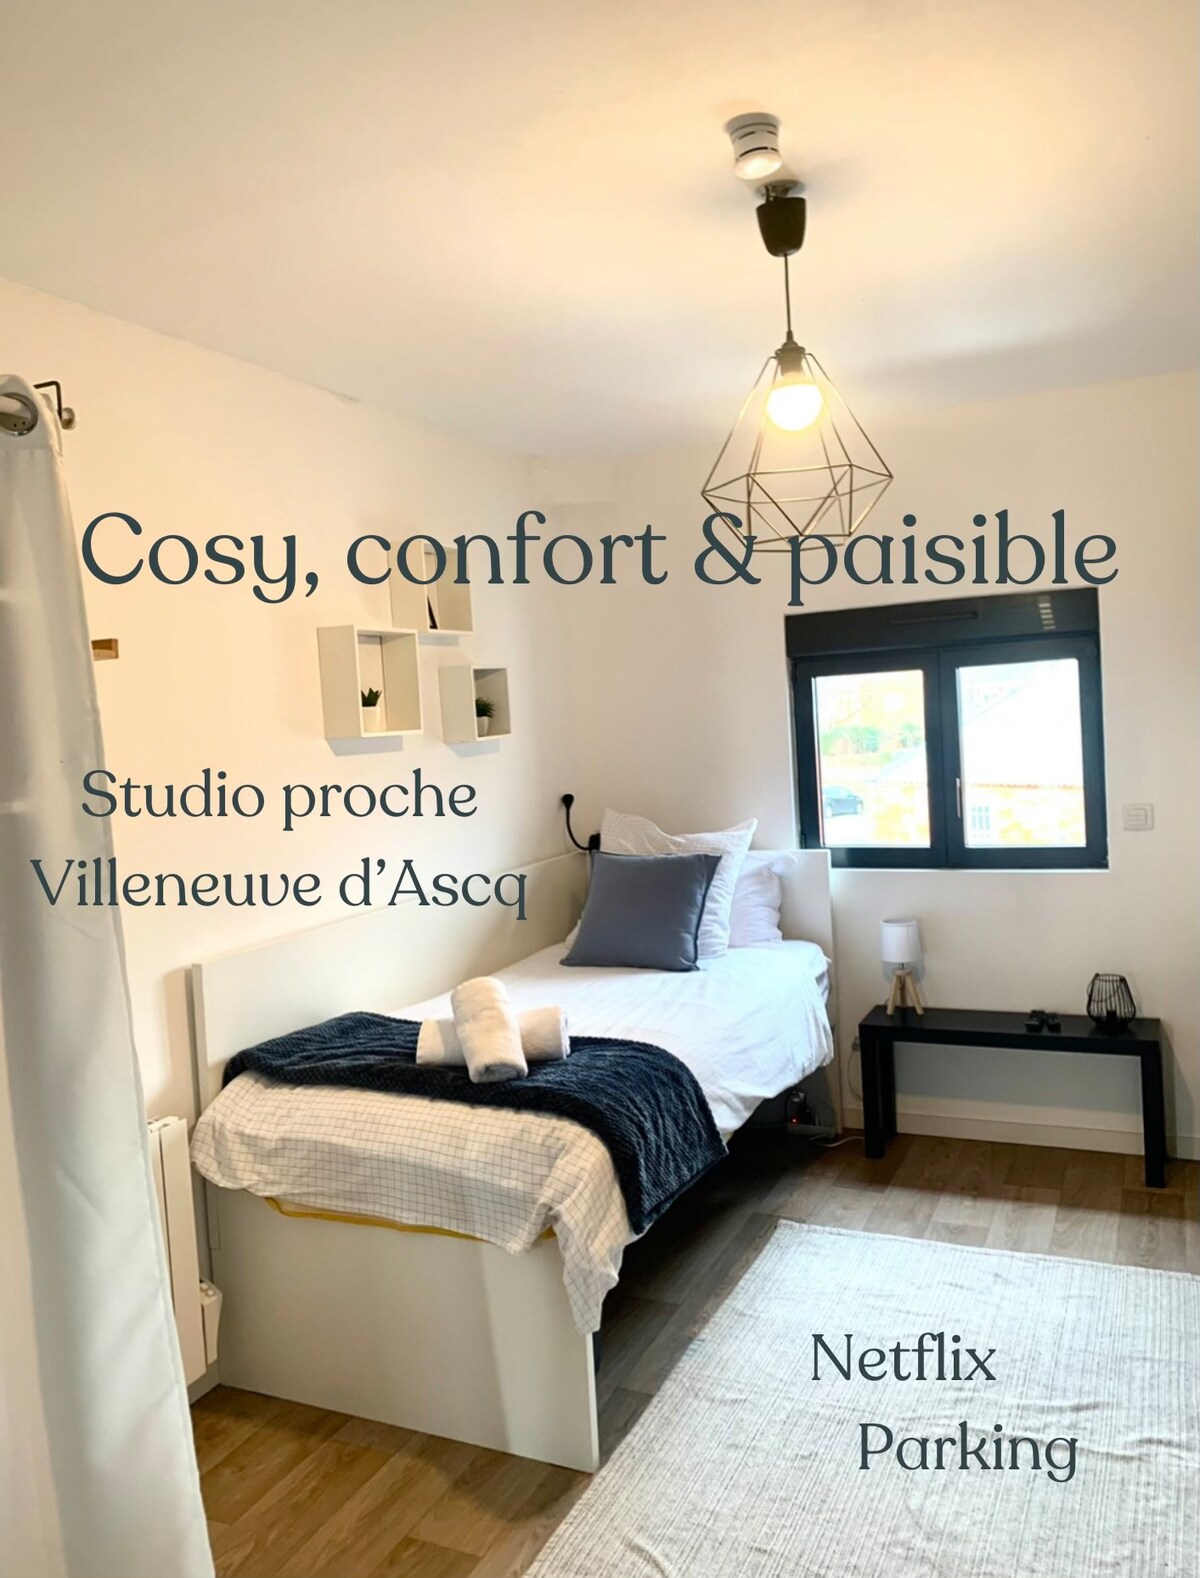 新单间公寓距离V. d 'Ascq 5分钟车程距离里尔10分钟车程